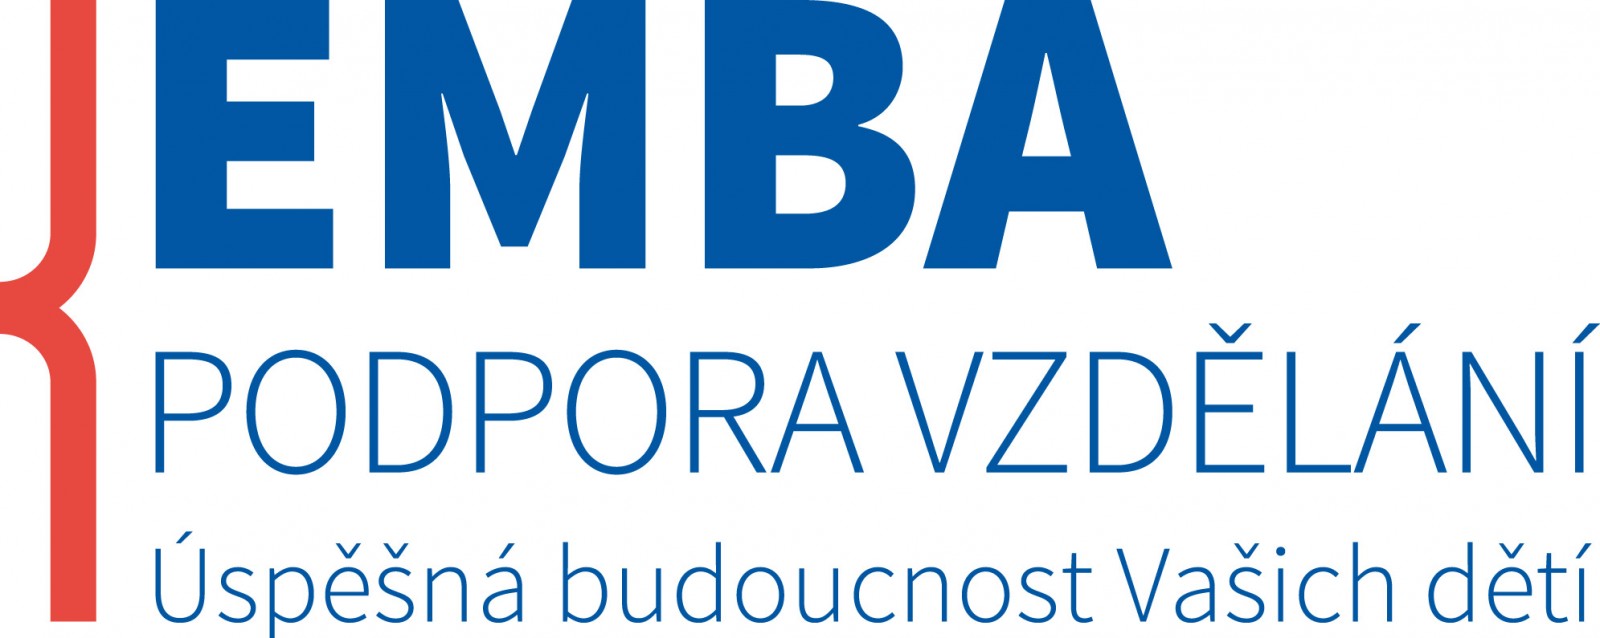 emba_podpora_vzdelavani_logo.jpg